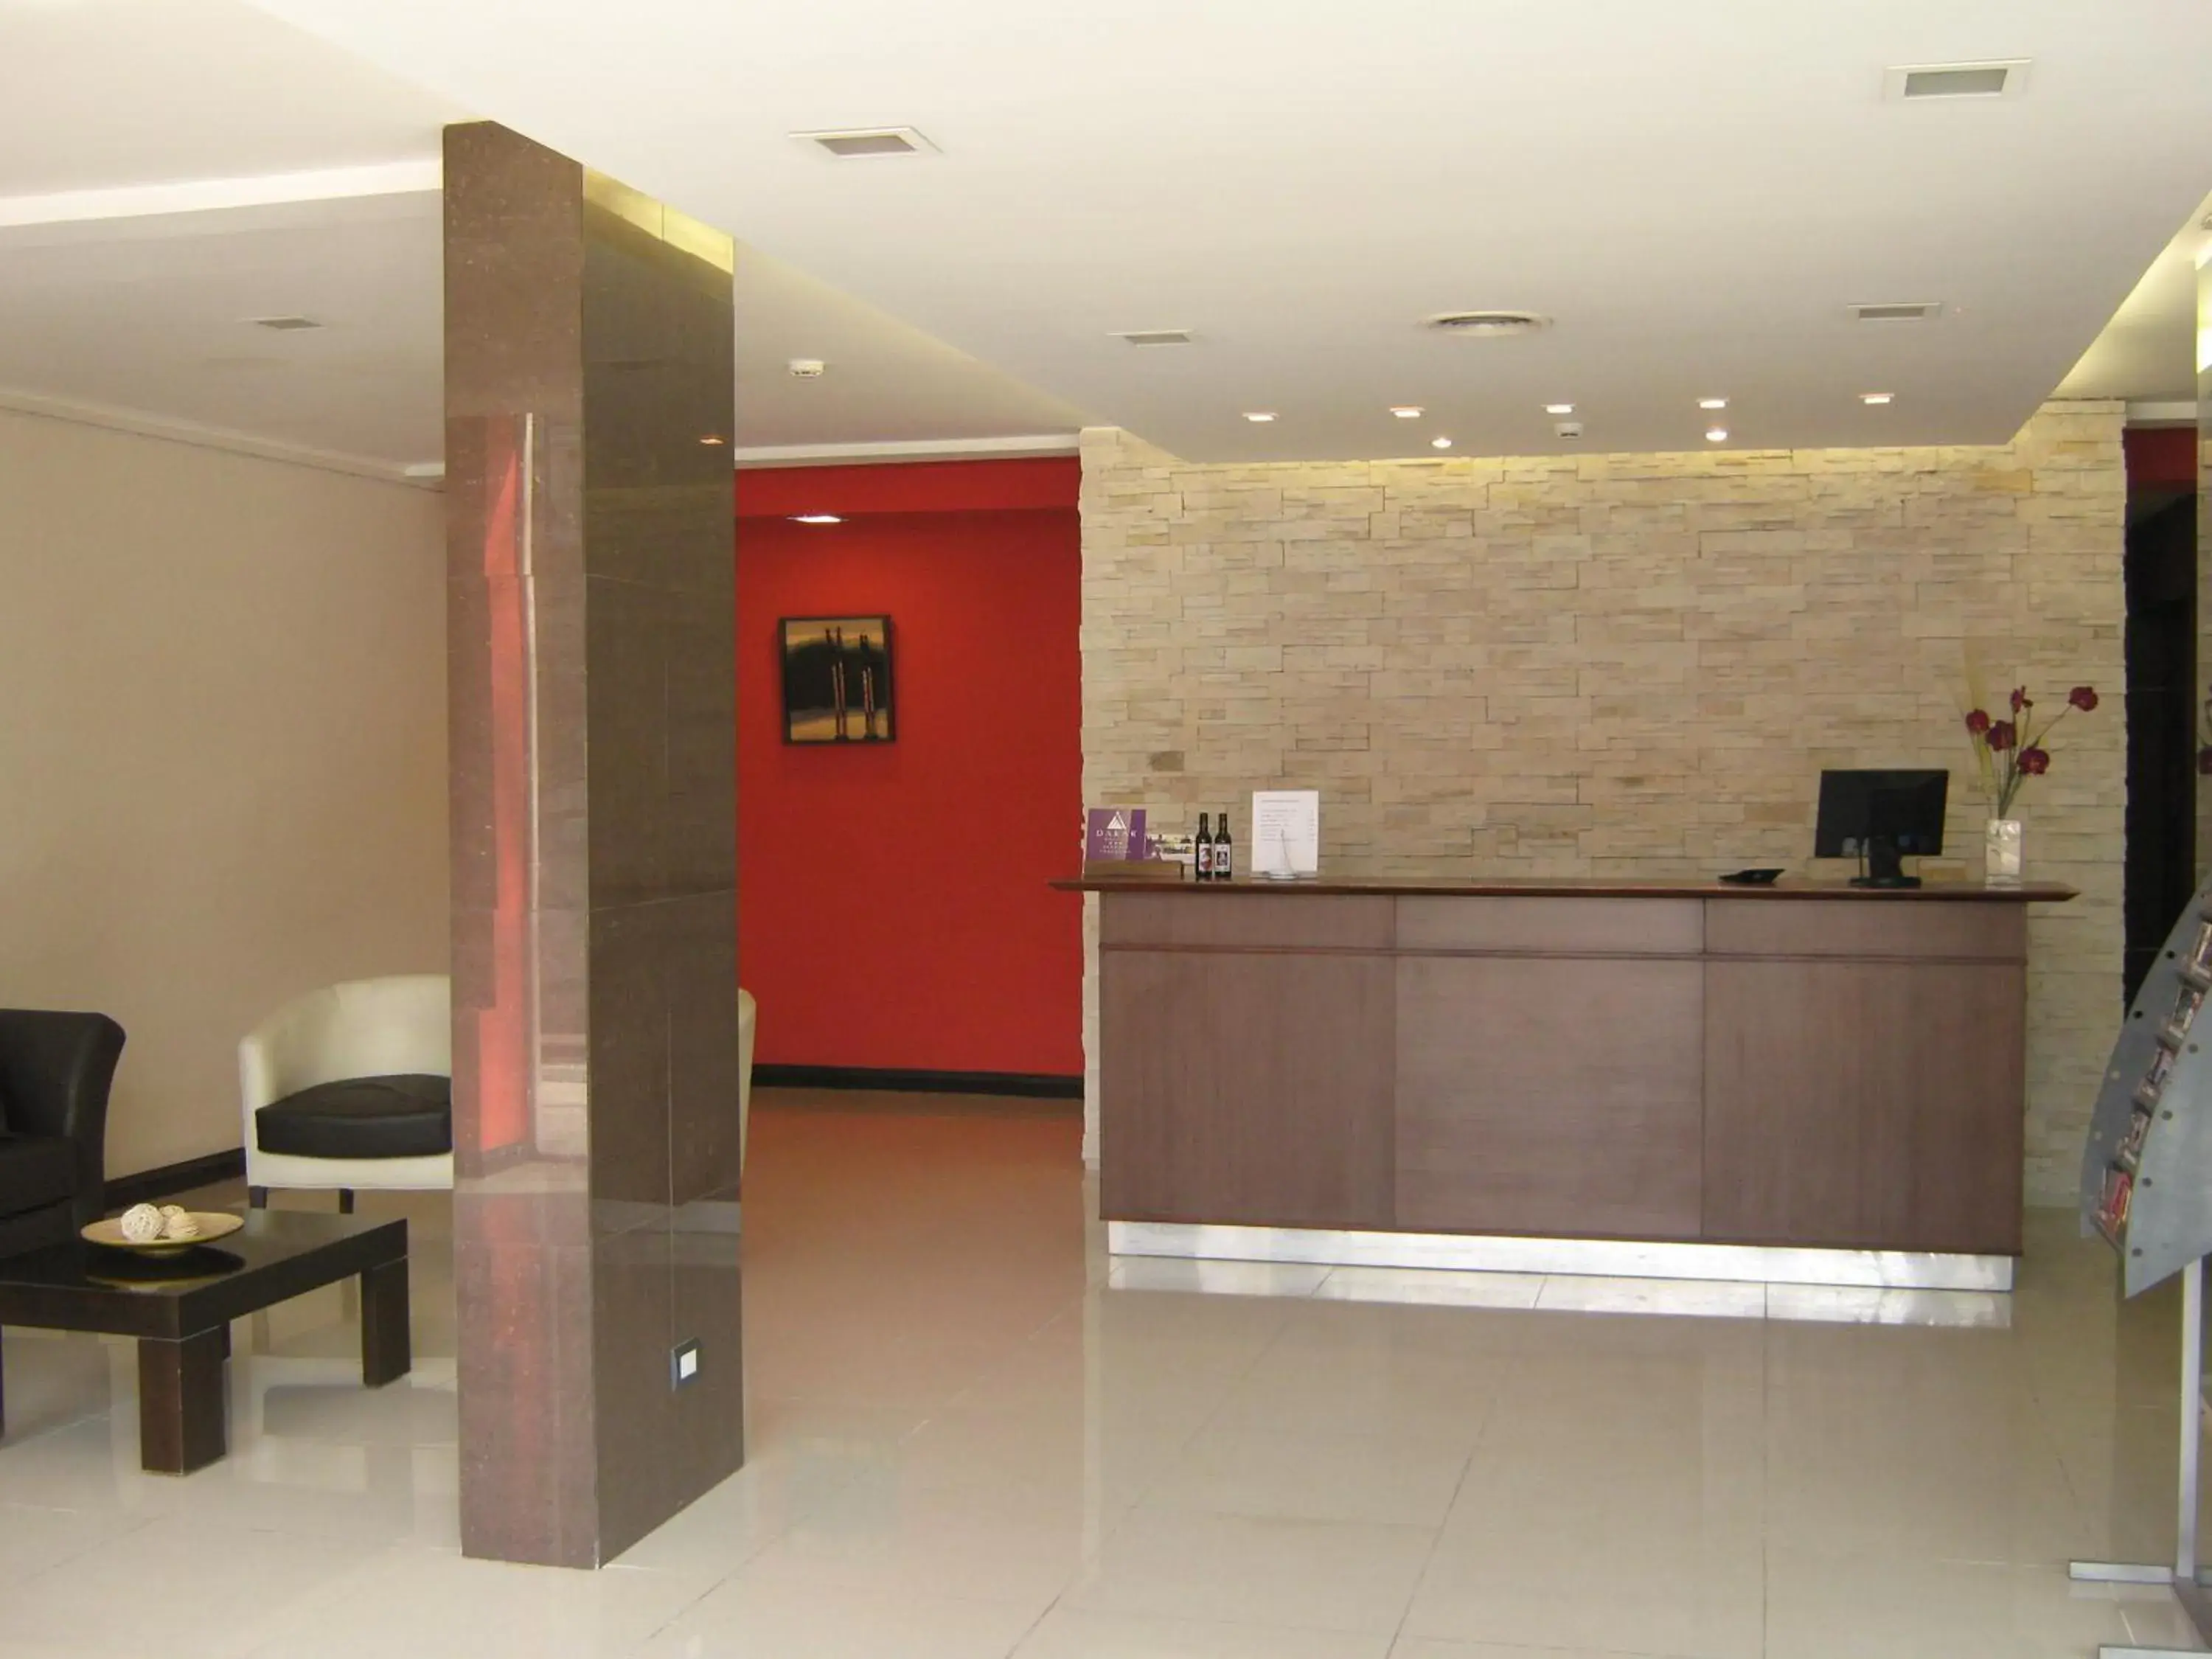 Lobby or reception, Lobby/Reception in DAKAR HOTEL